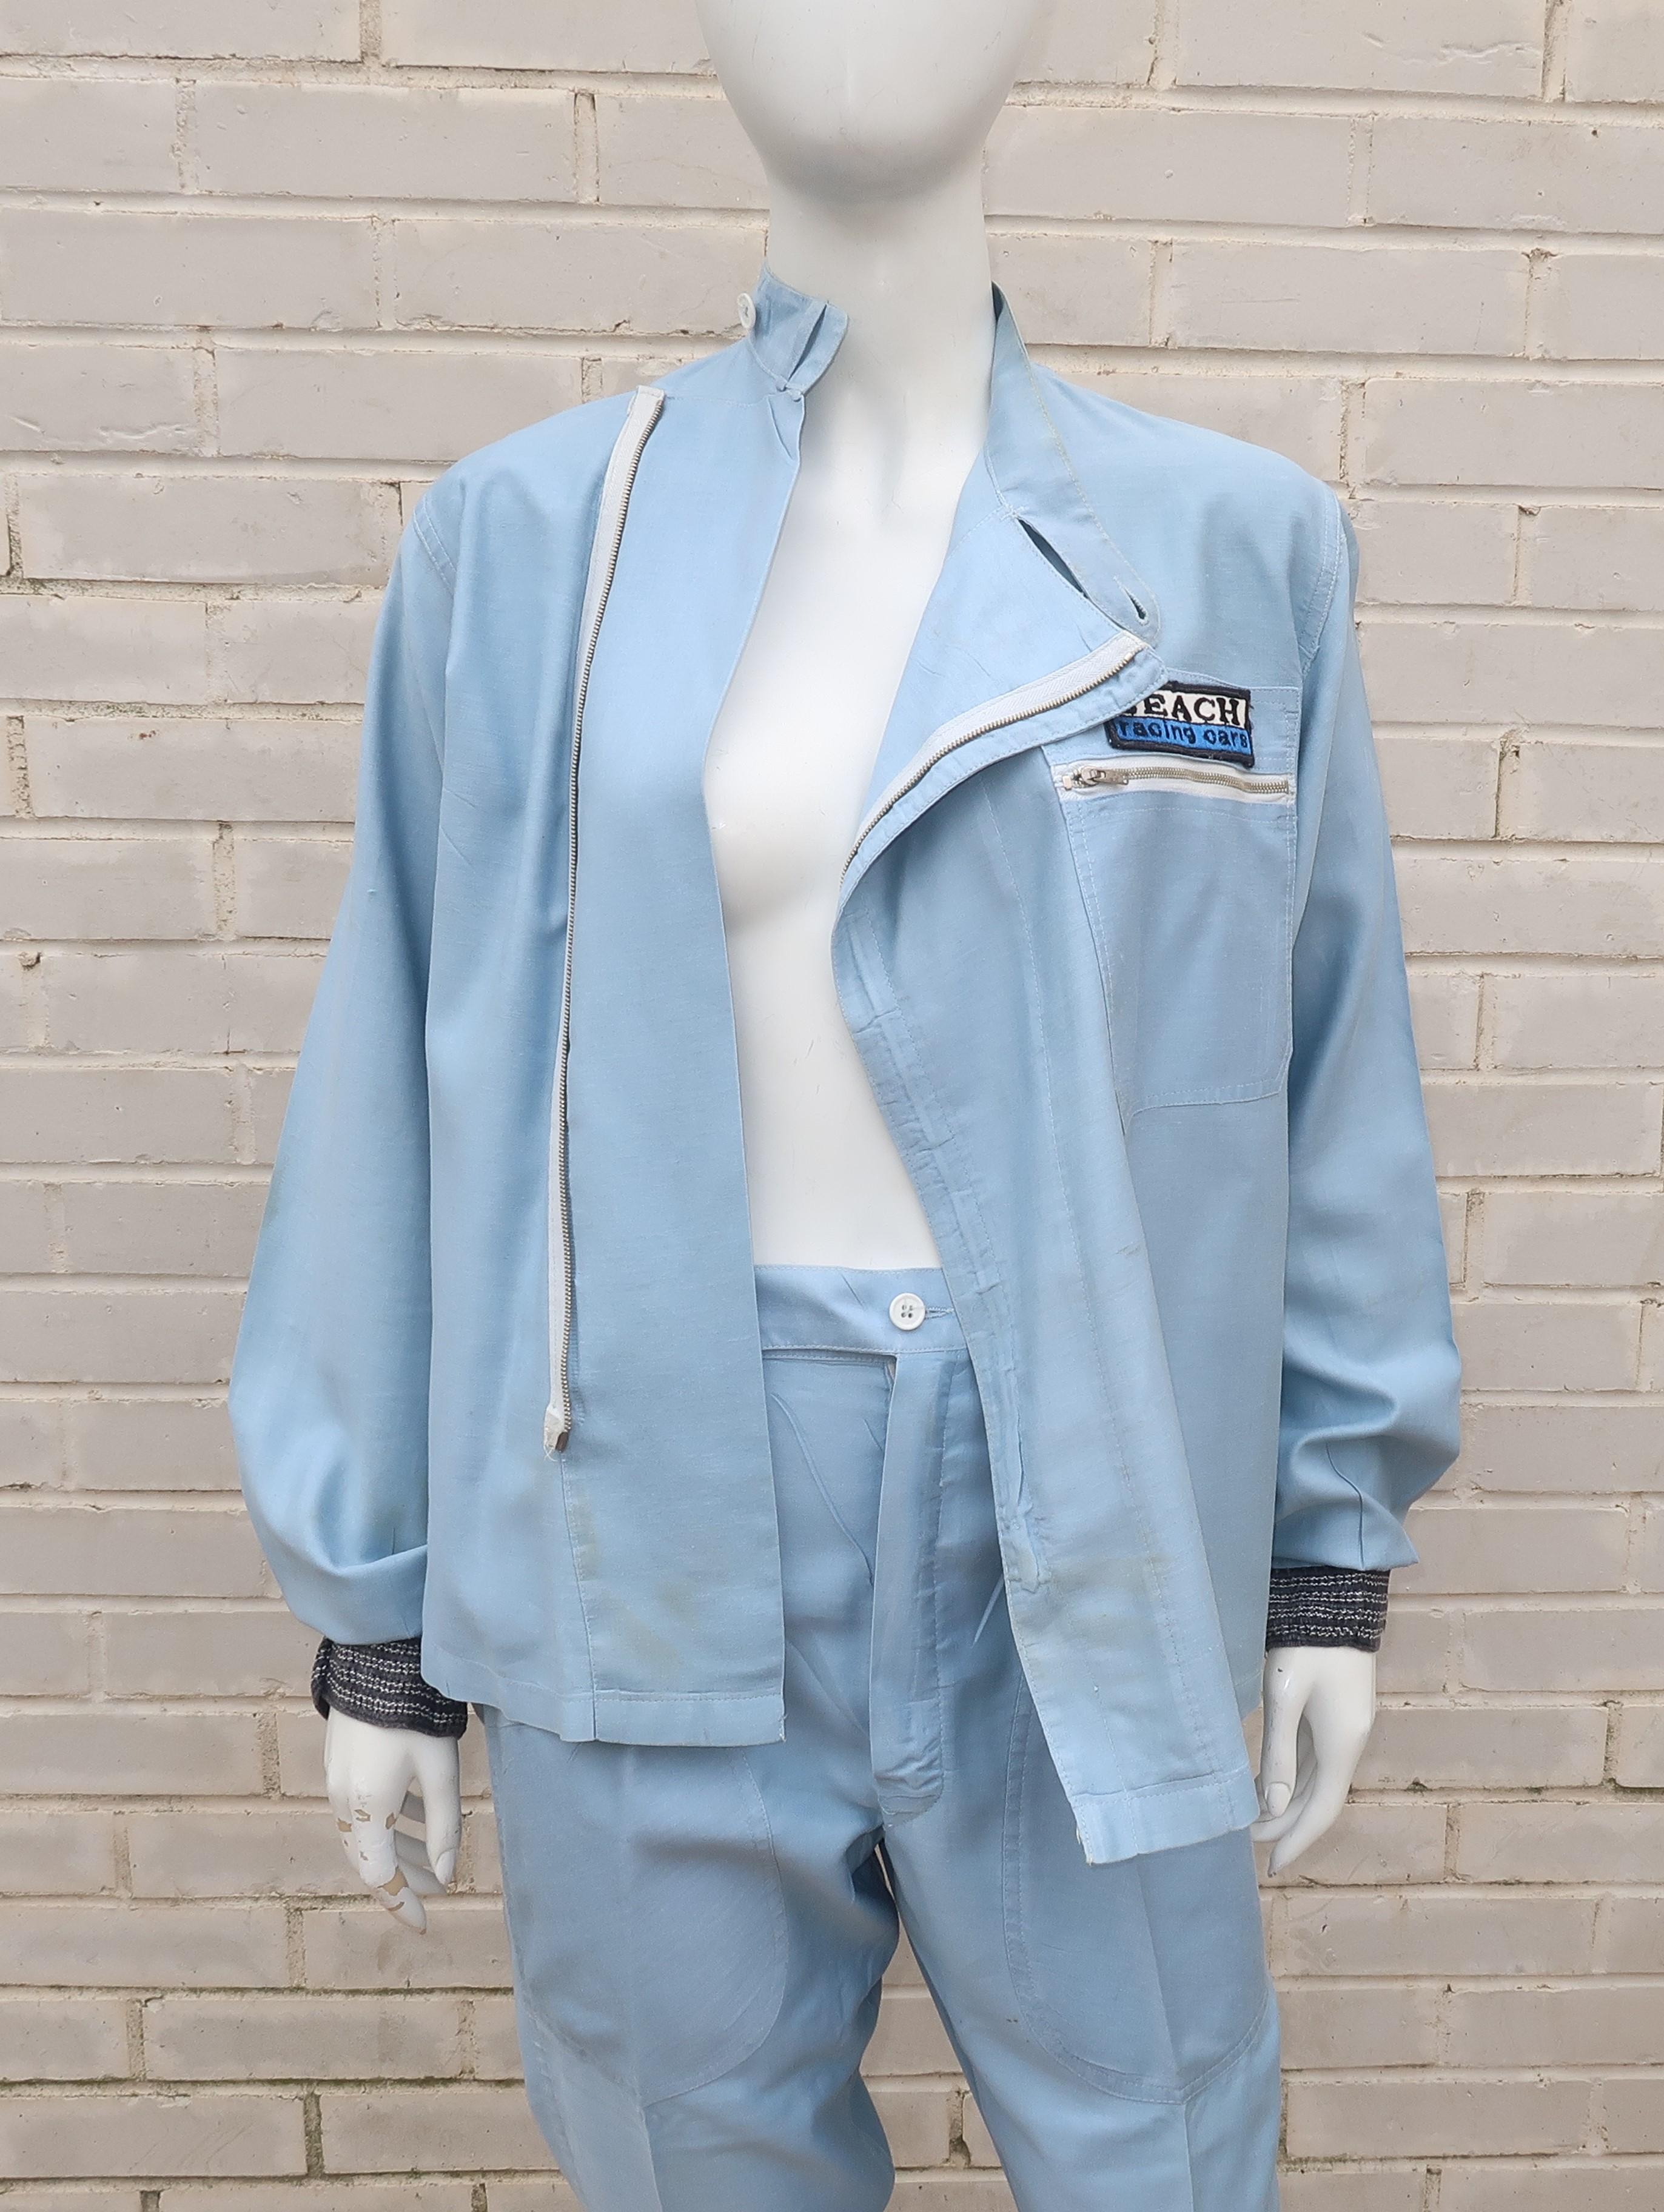 Authentic 1960’s Auto Racing Uniform Suit 5